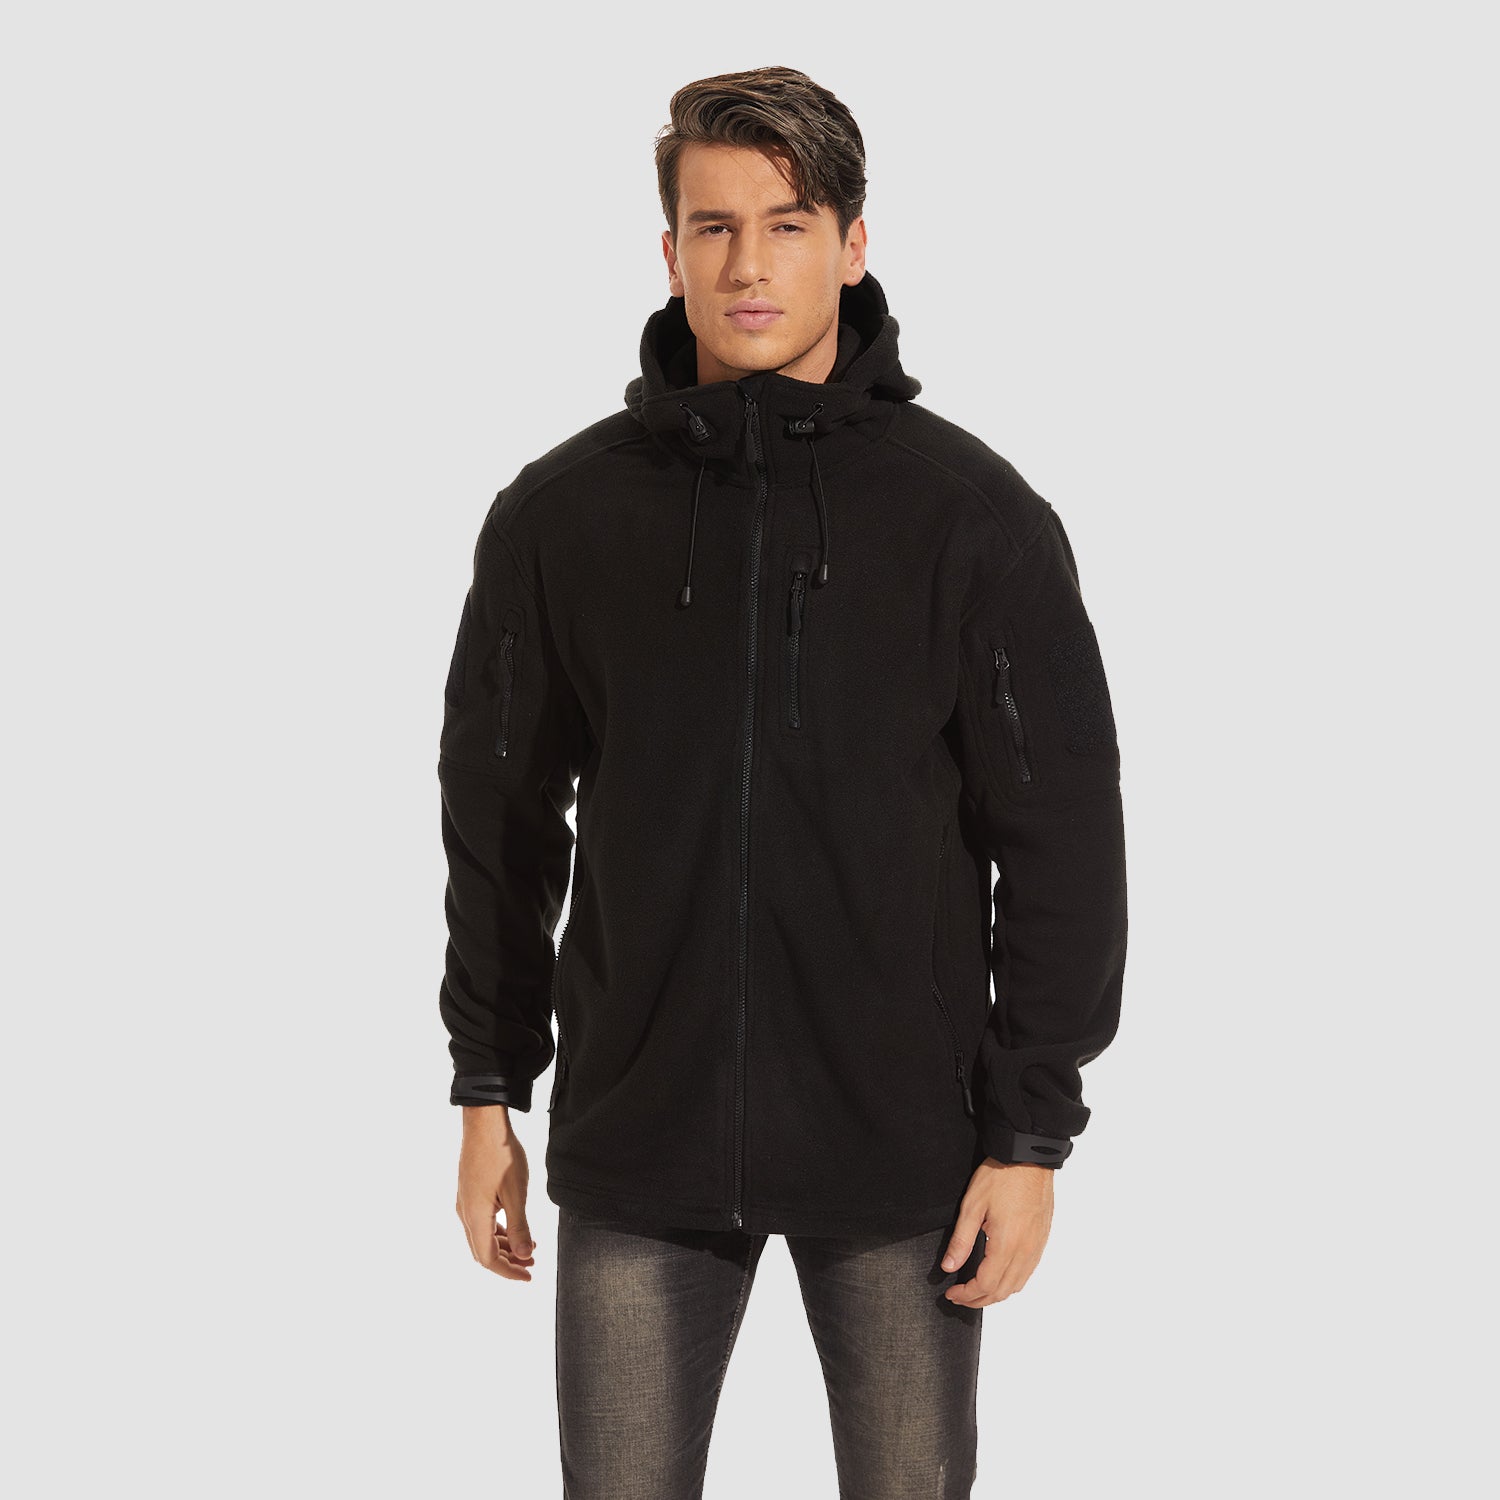 https://magcomsen.com/cdn/shop/products/Men_s-Fleece-Hoodie-Jacket-5-Zip-Pockets-Military-Tactical-Coat-Windproof-Winter-Full-Zip-Hiking-Work-Outwear_3.jpg?v=1673487775&width=1500